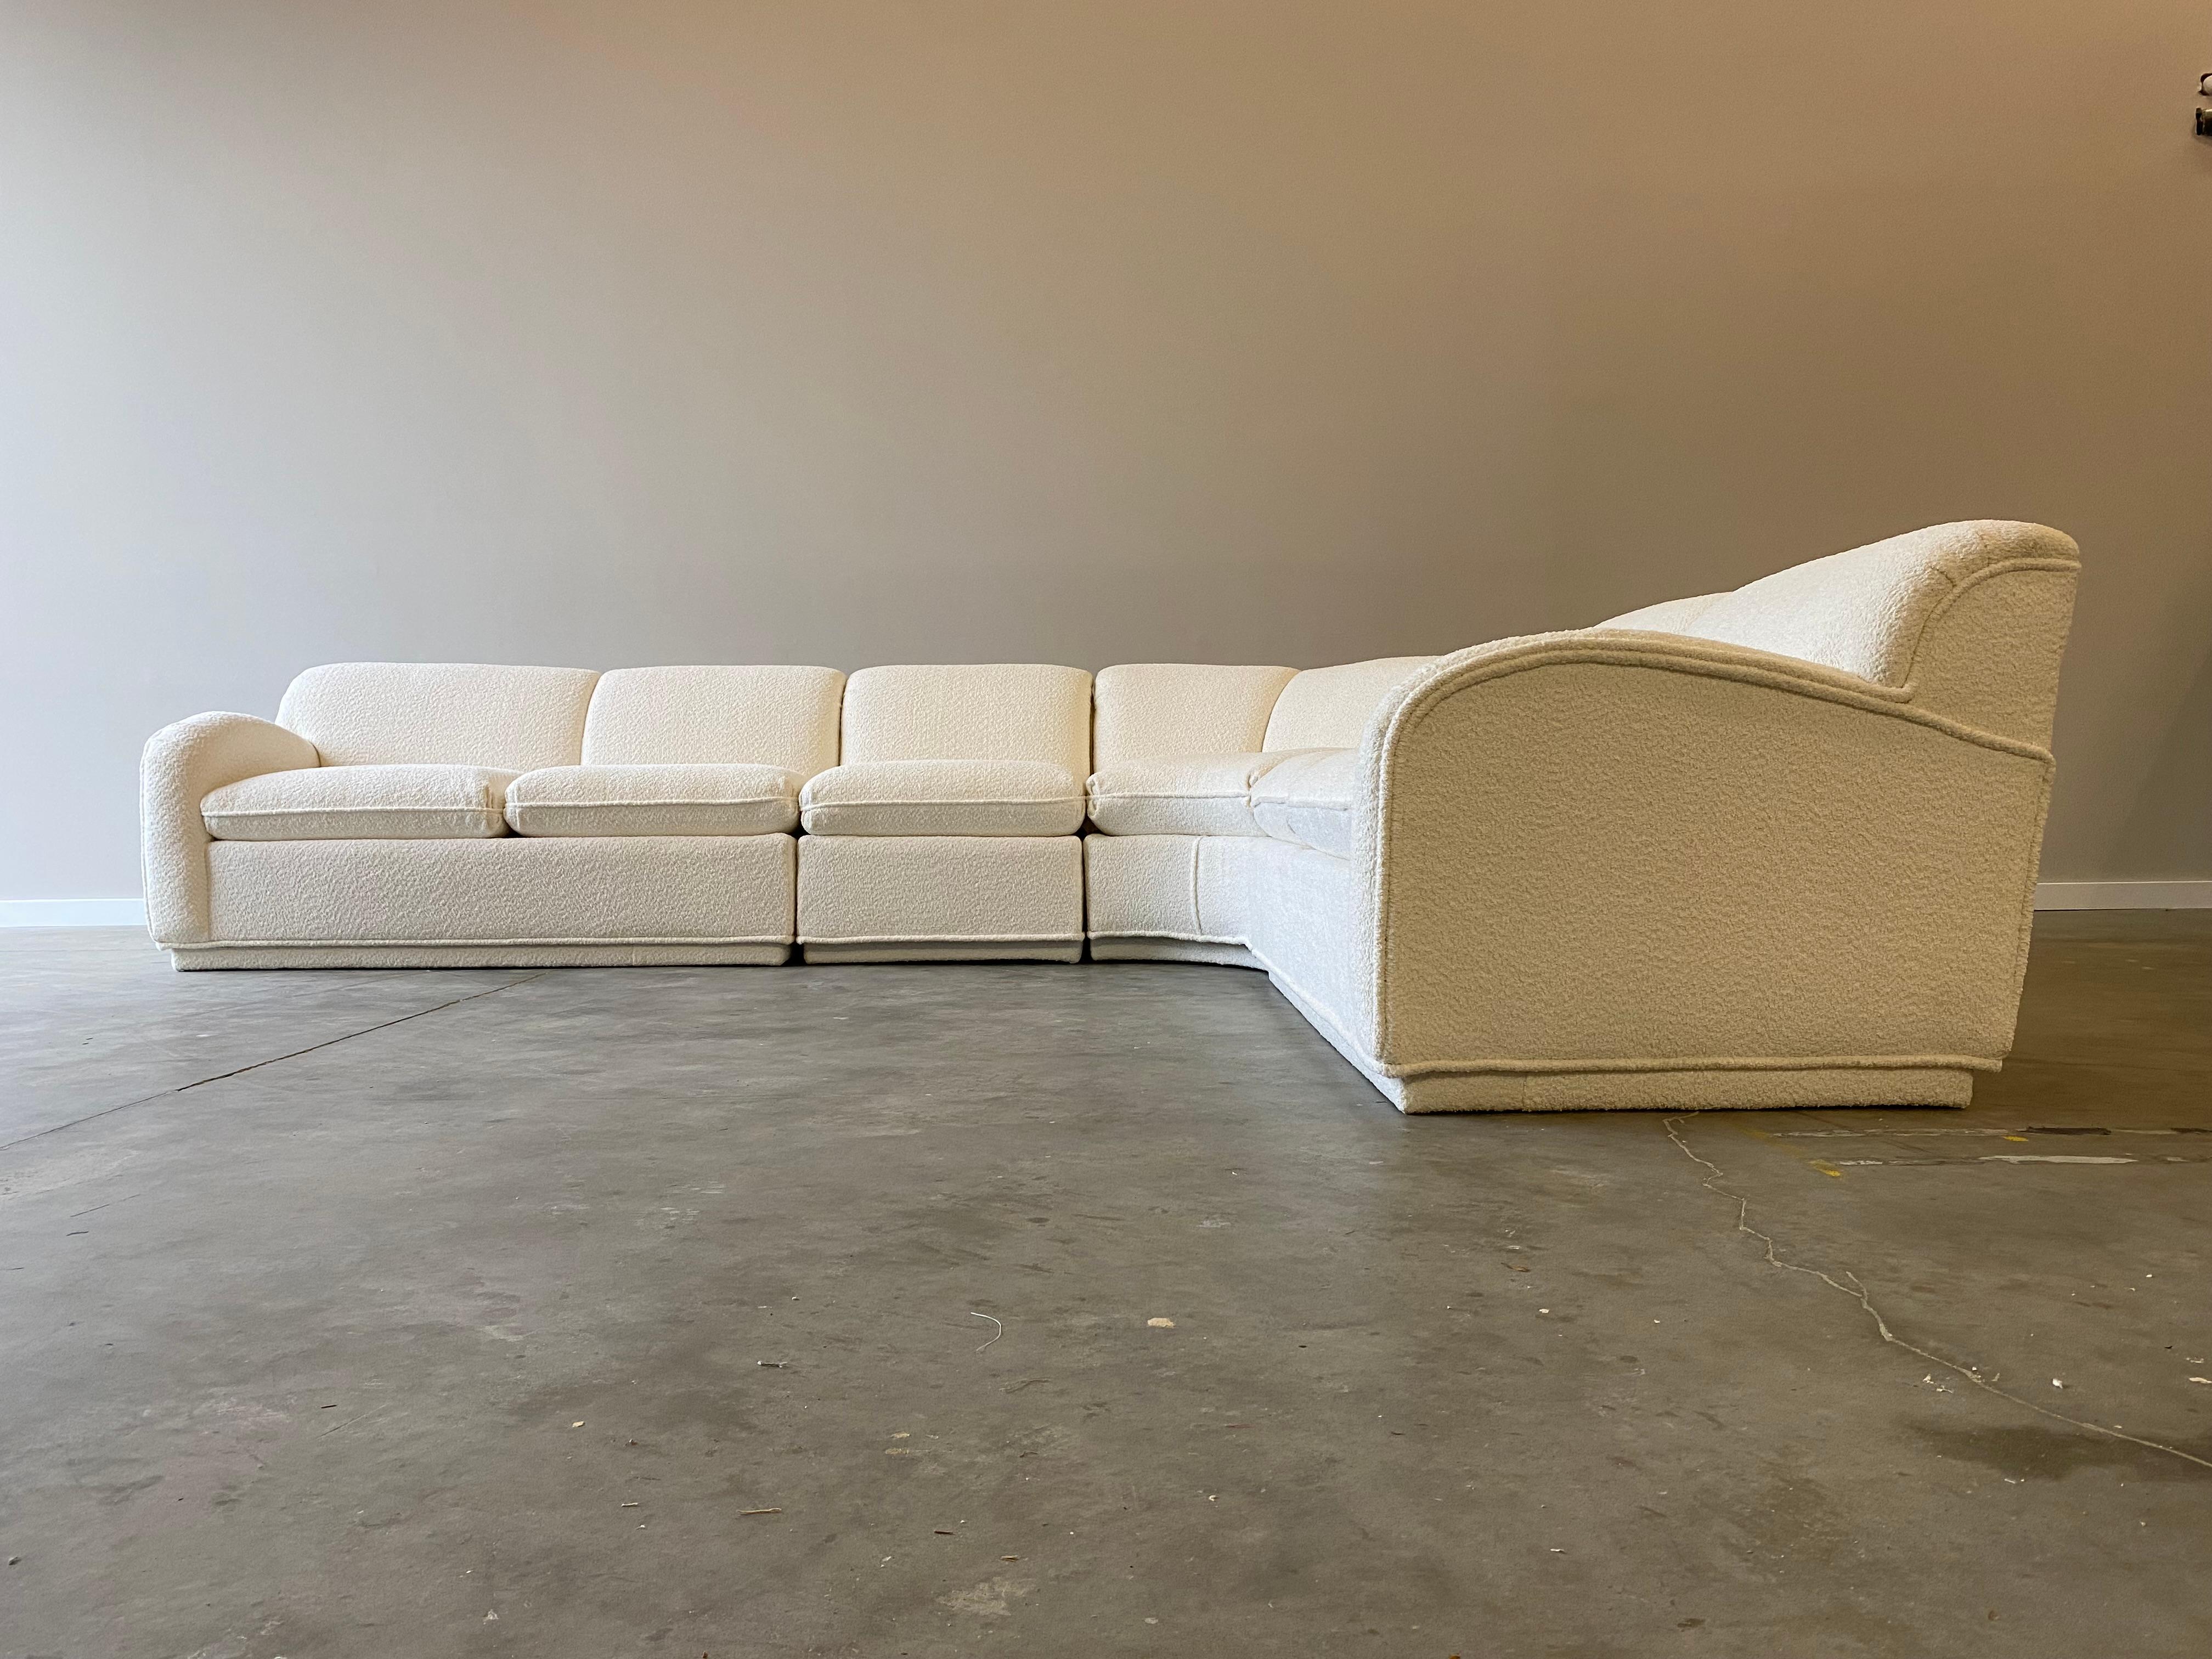 Ein unglaubliches Vintage-Sofa, neu gepolstert mit einem Plüschstoff. Einzigartige dicke Keder und tiefe bequeme Sitze zu diesem atemberaubenden Sofa.

Diese Sitzgruppe besteht aus vier Teilen. Das kleinste Stück ist 30